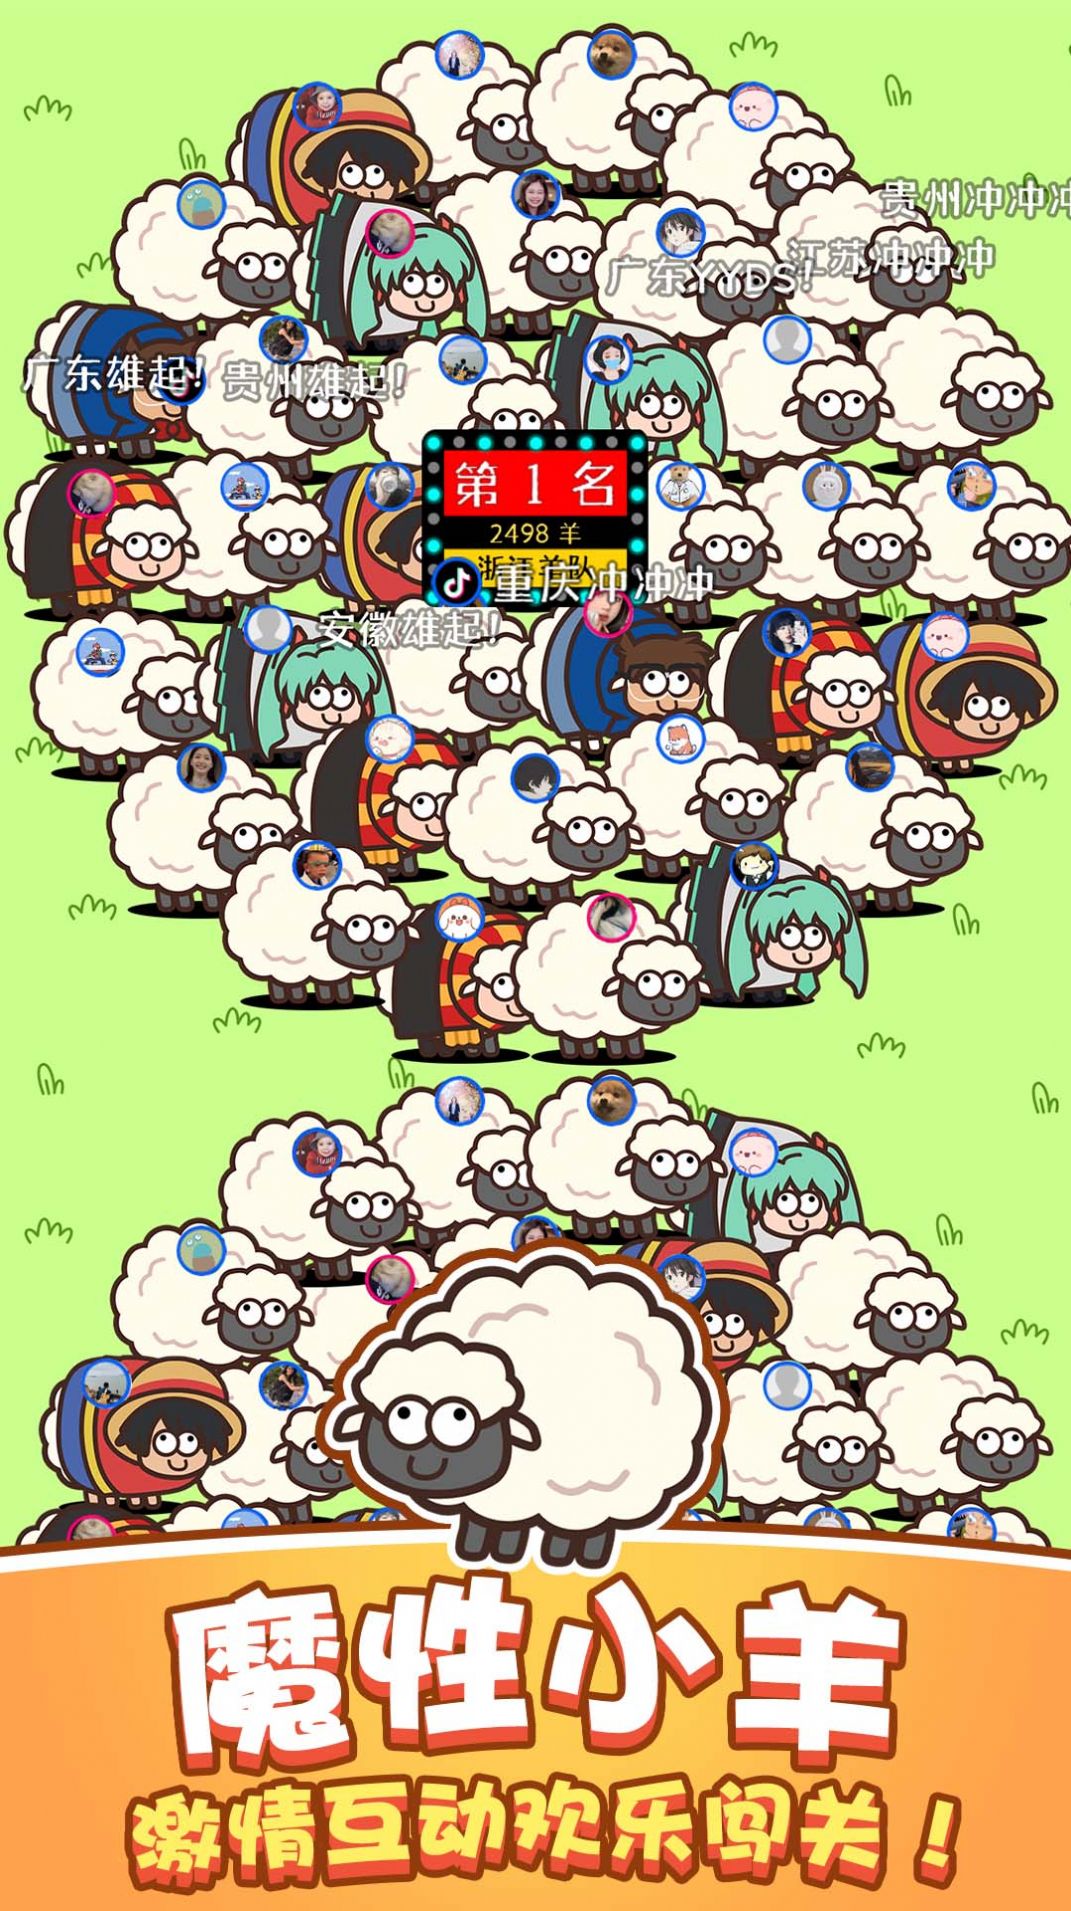 功夫羊羊欢乐跳游戏安卓版图片1